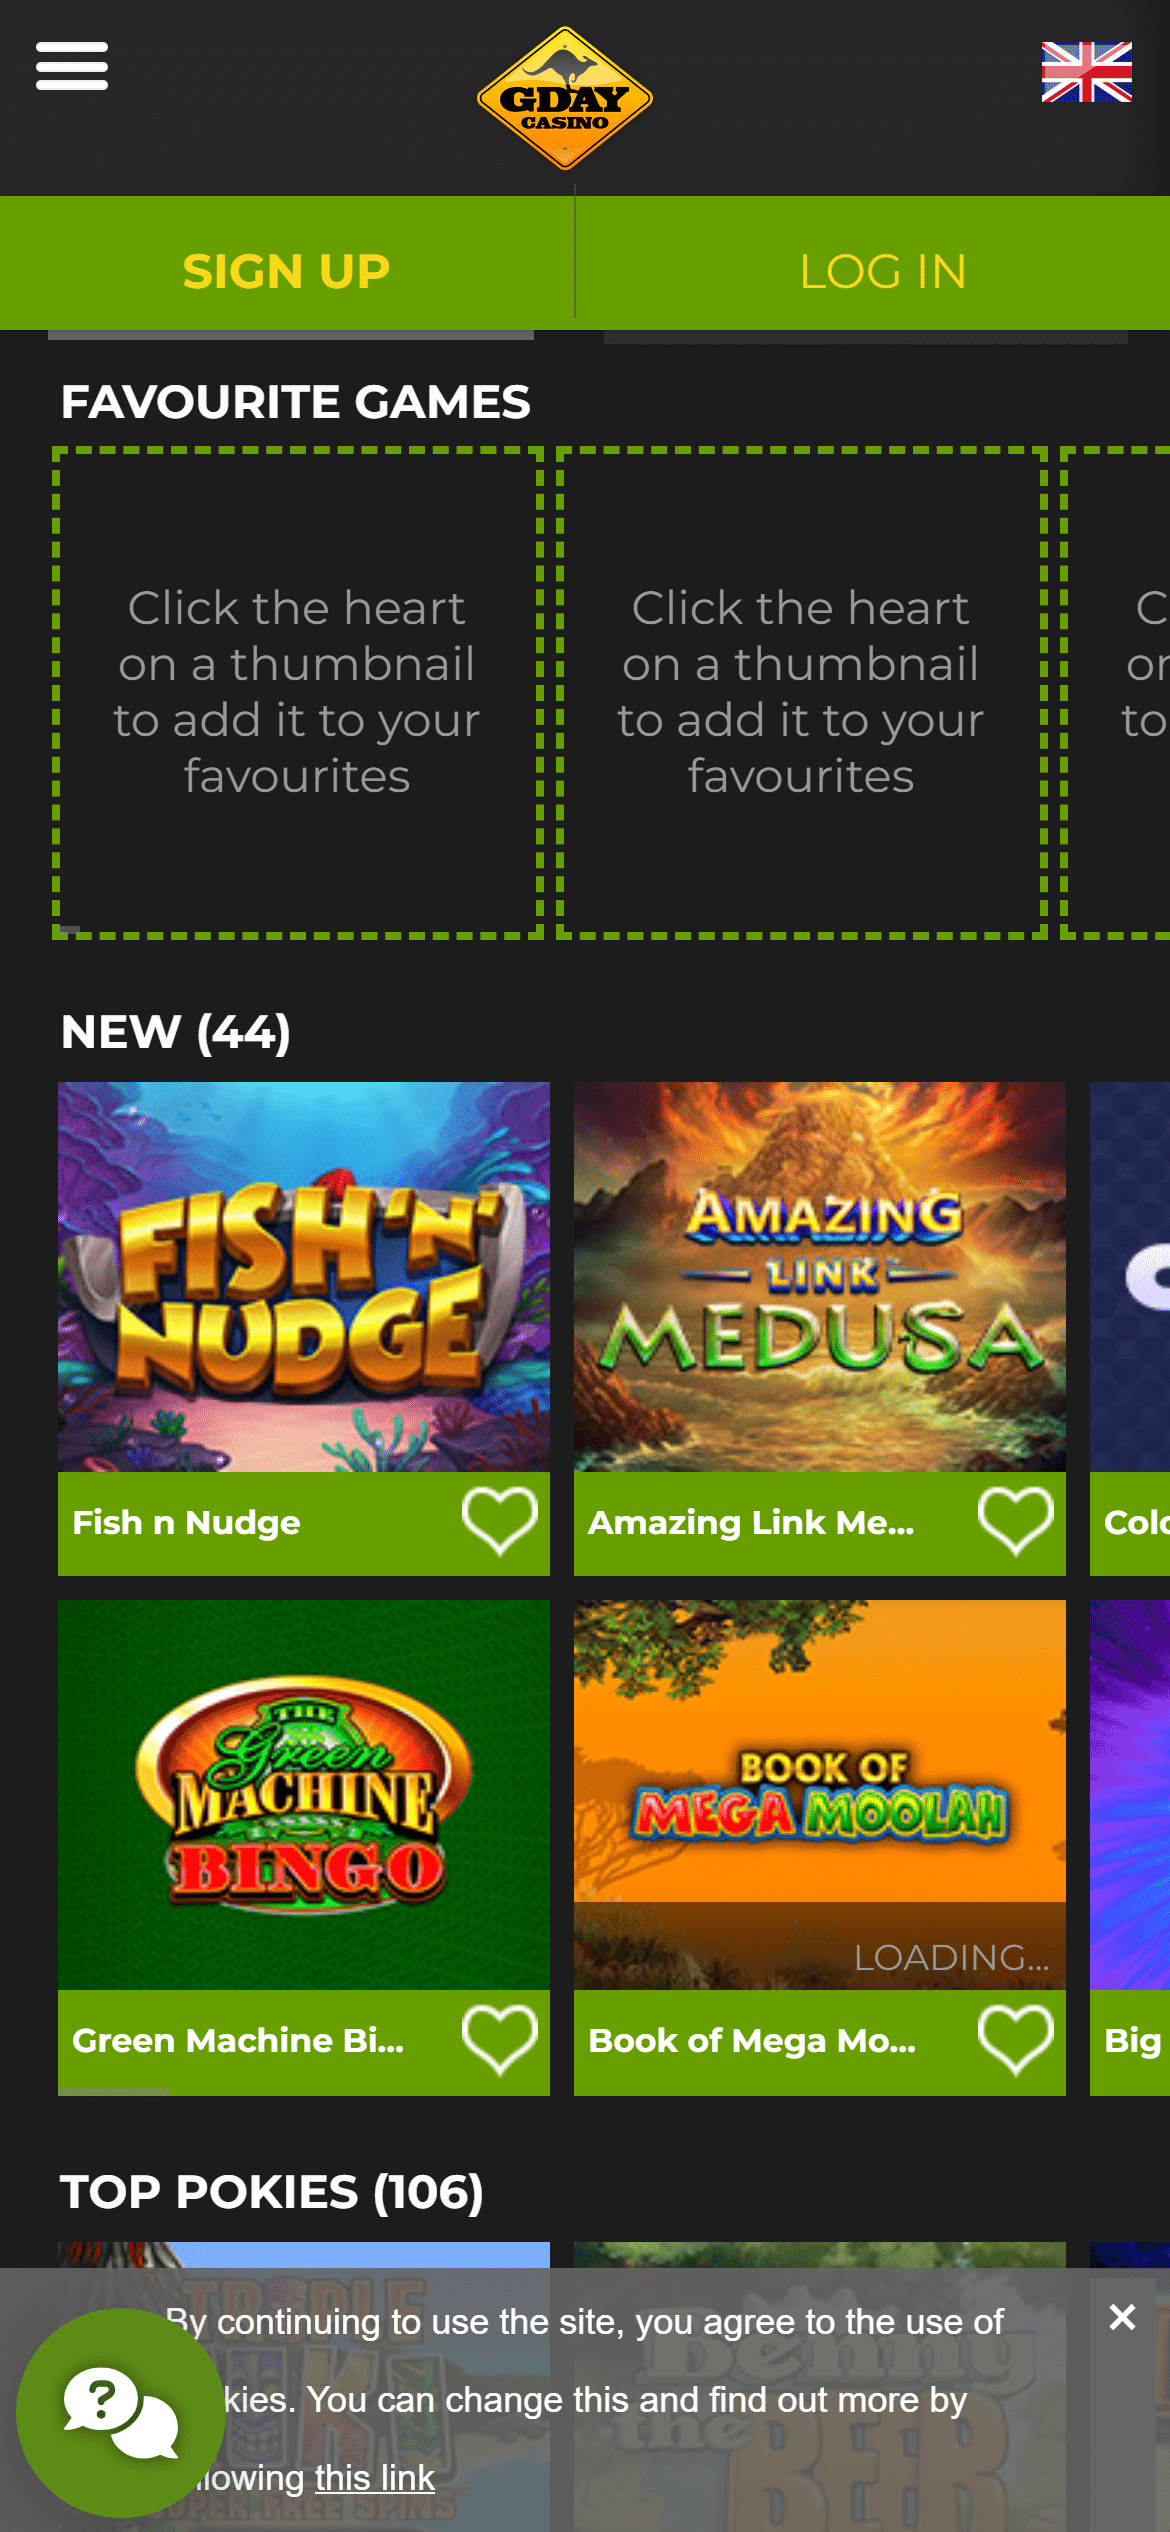 GDay Casino screenshot